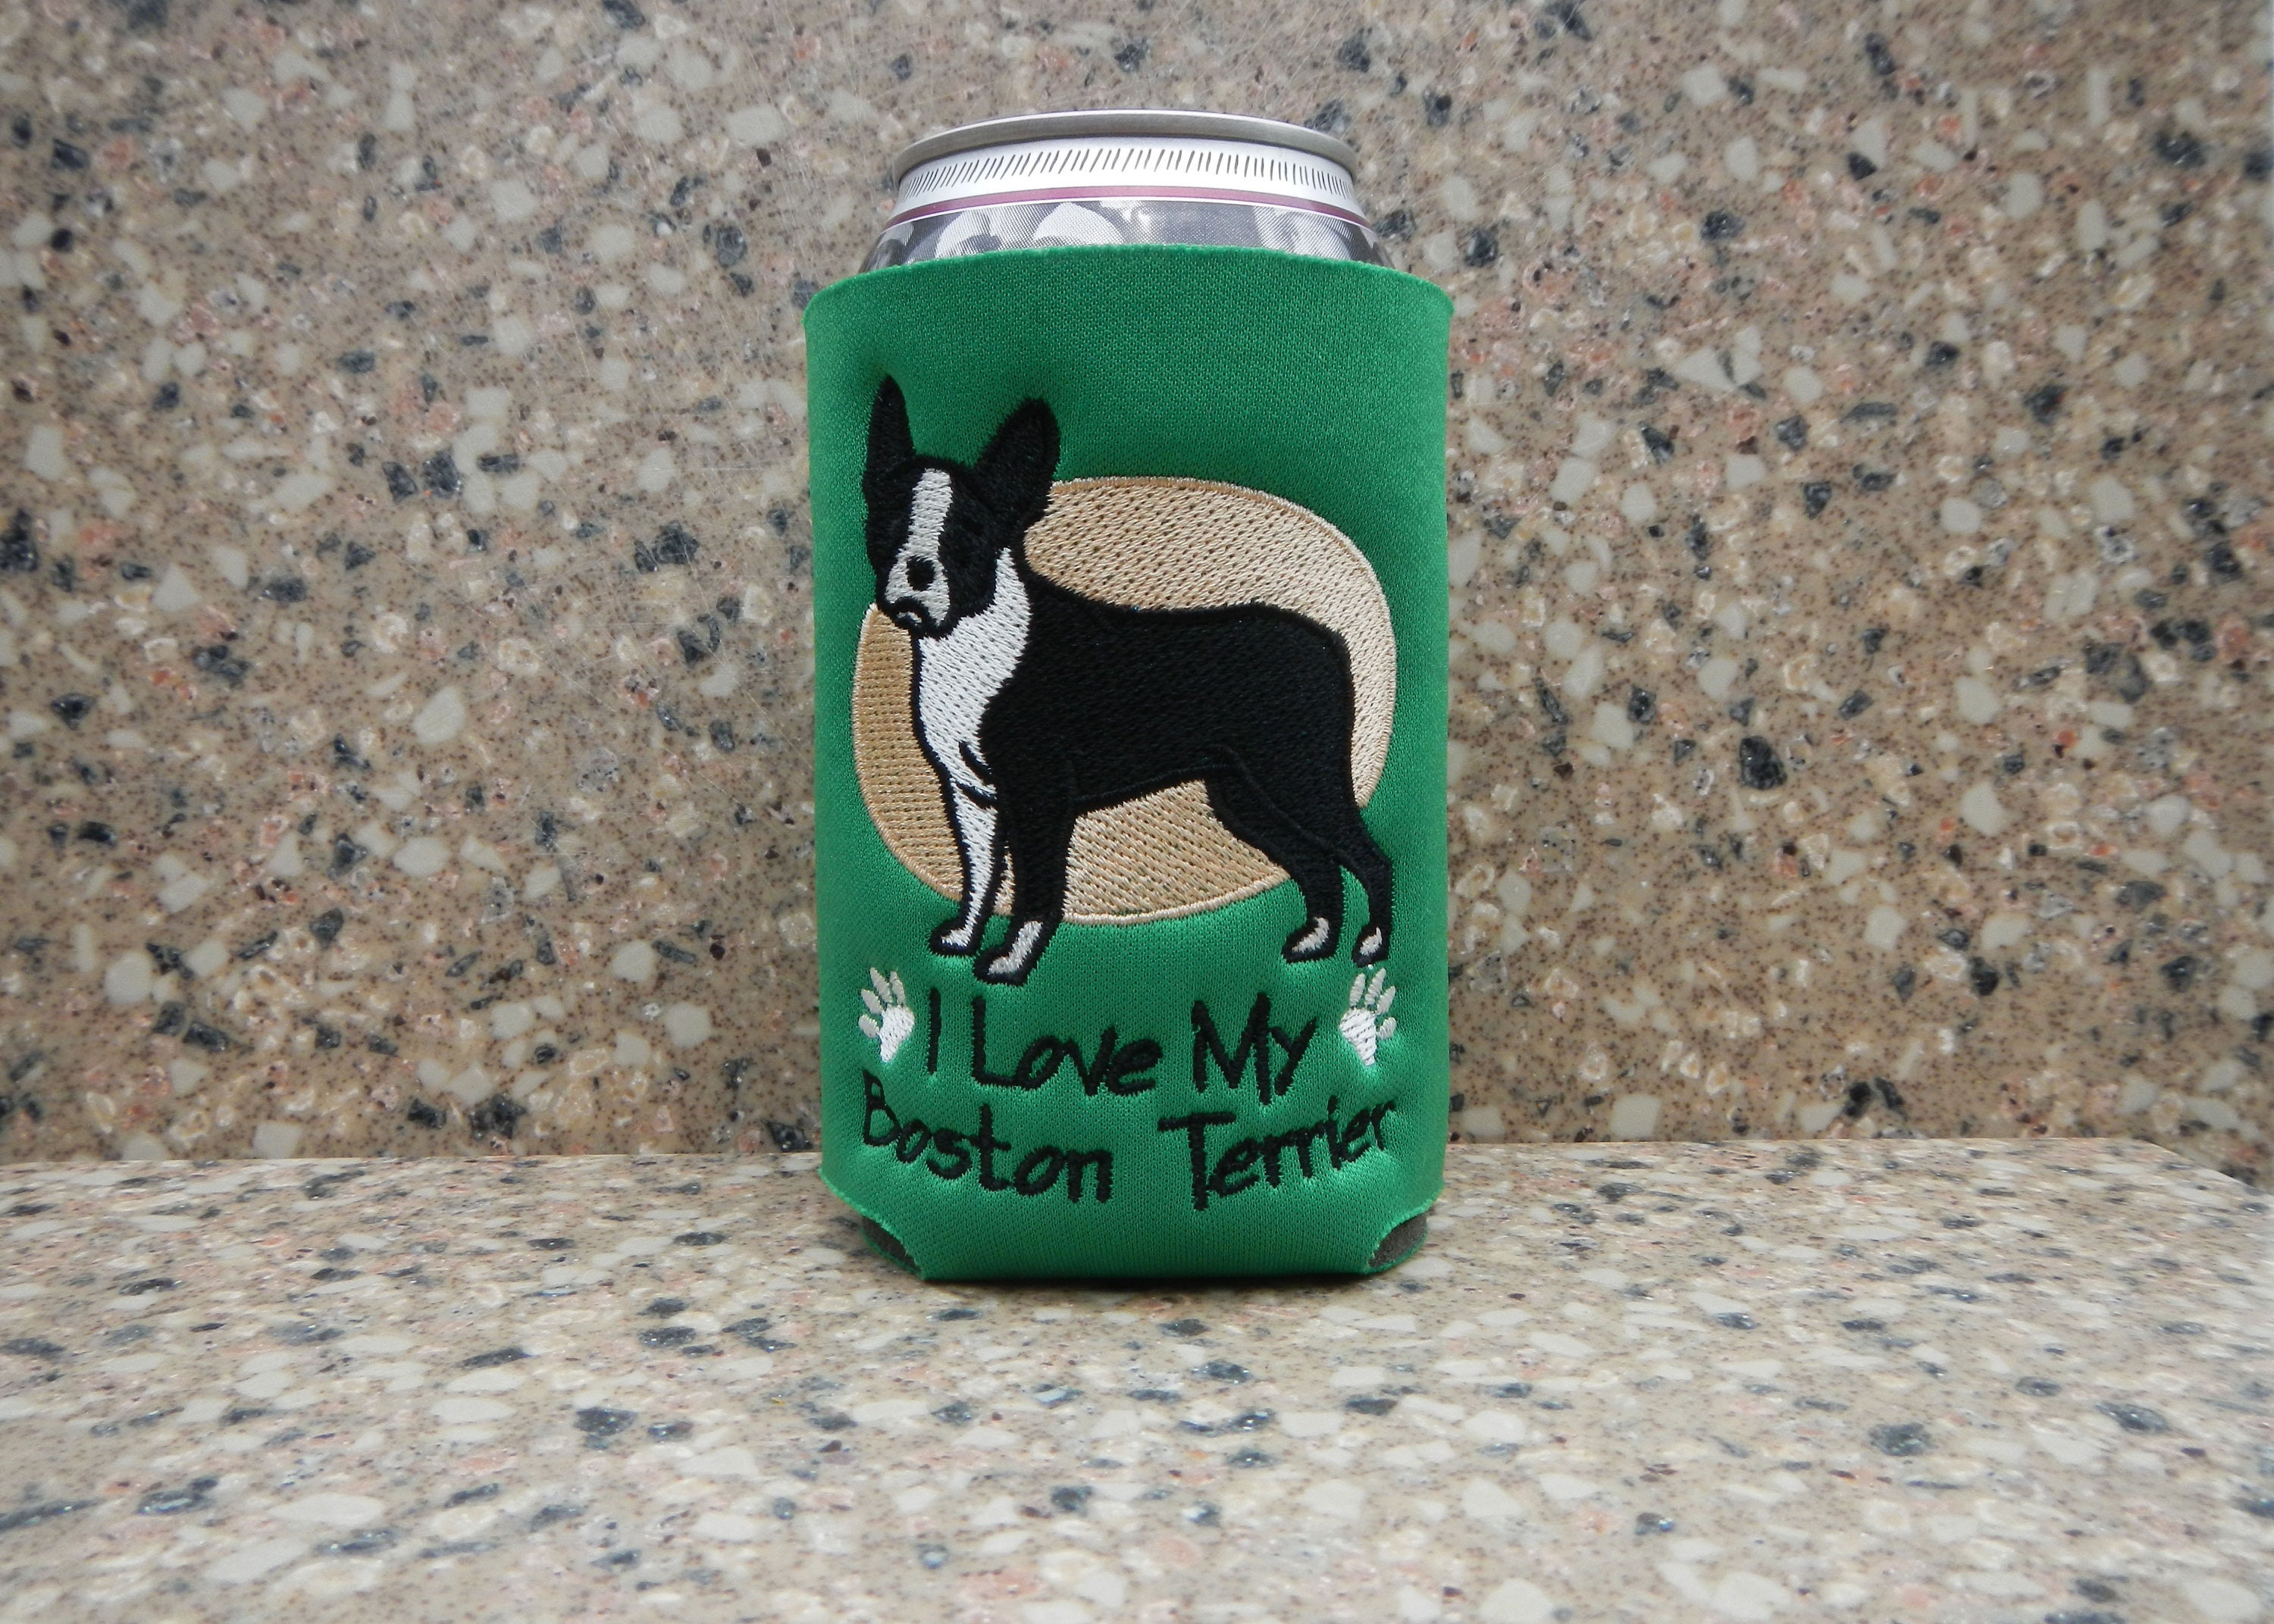 Dog Lovin' Beer Drinkin' Man Koozie – Buddies & Babes Boutique